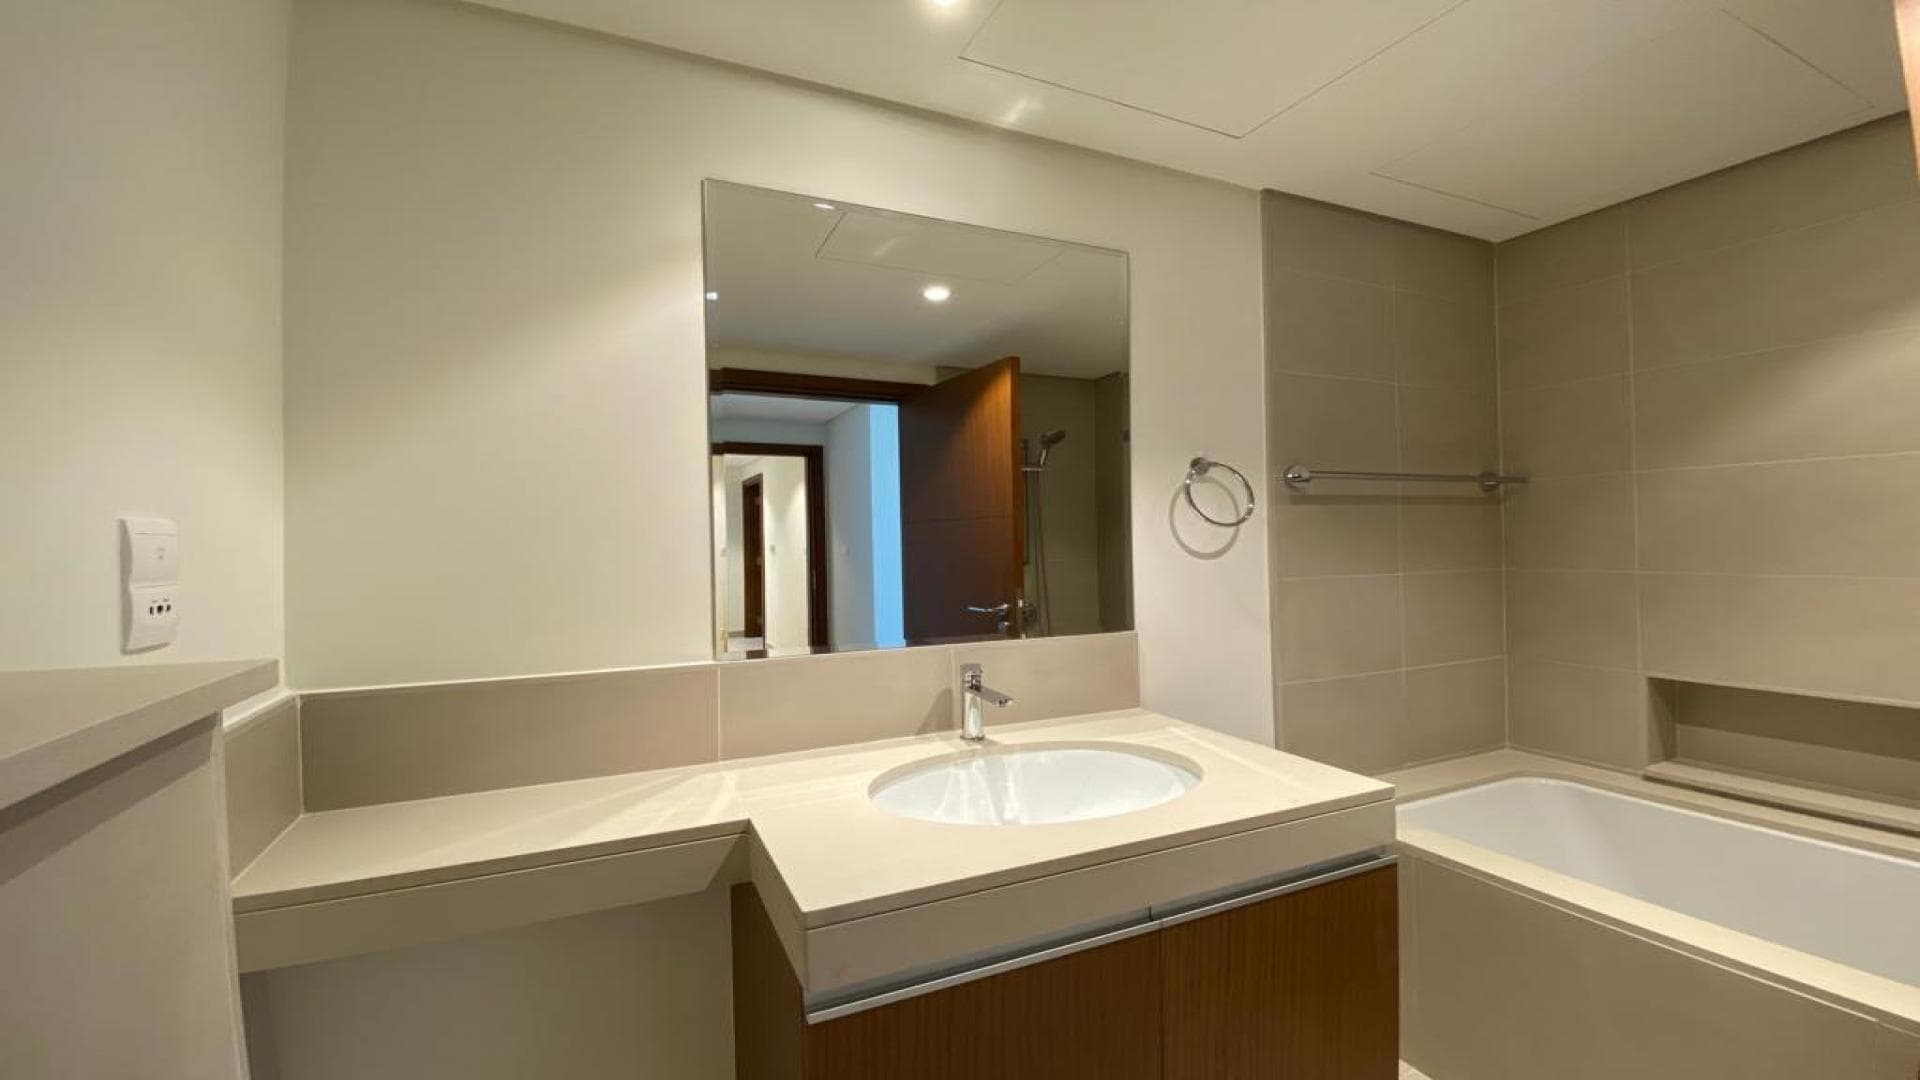 3 Bedroom Apartment For Sale Al Ramth 44 Lp34858 2de2dde526bc4000.jpeg